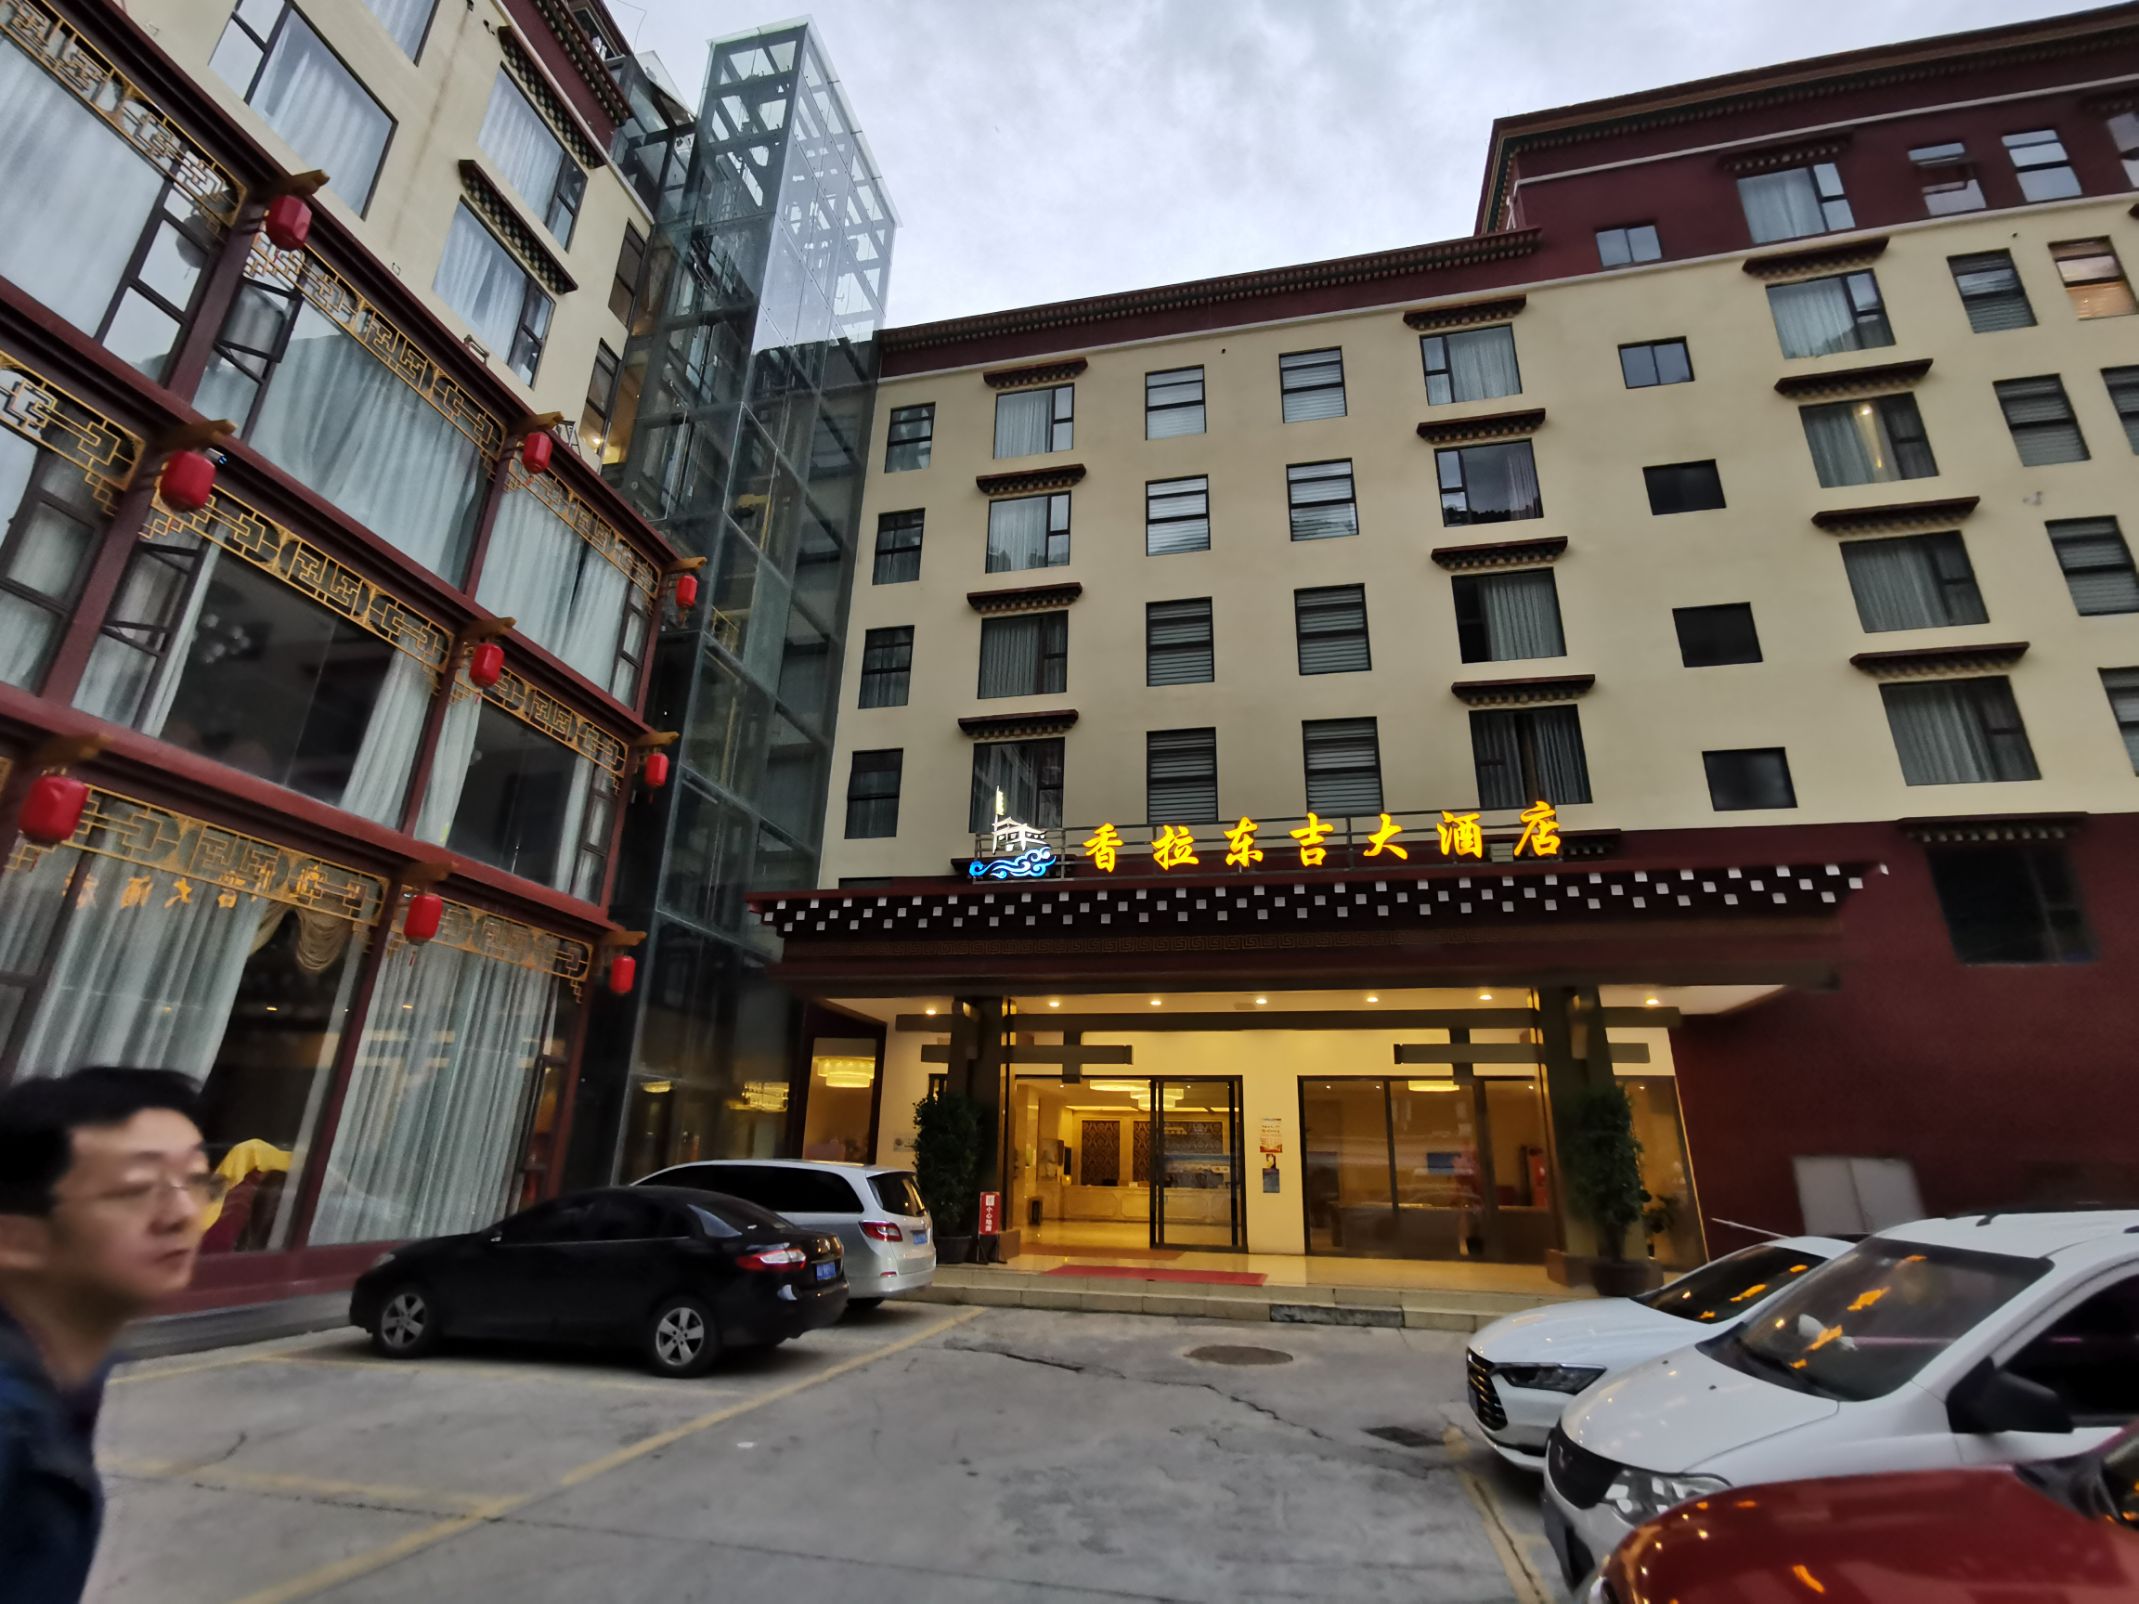 壤塘县城里规模最大的一个酒店，就在进县城的入口处很好找，斜对面就有加油站。 房间稍微小了点，但设施还